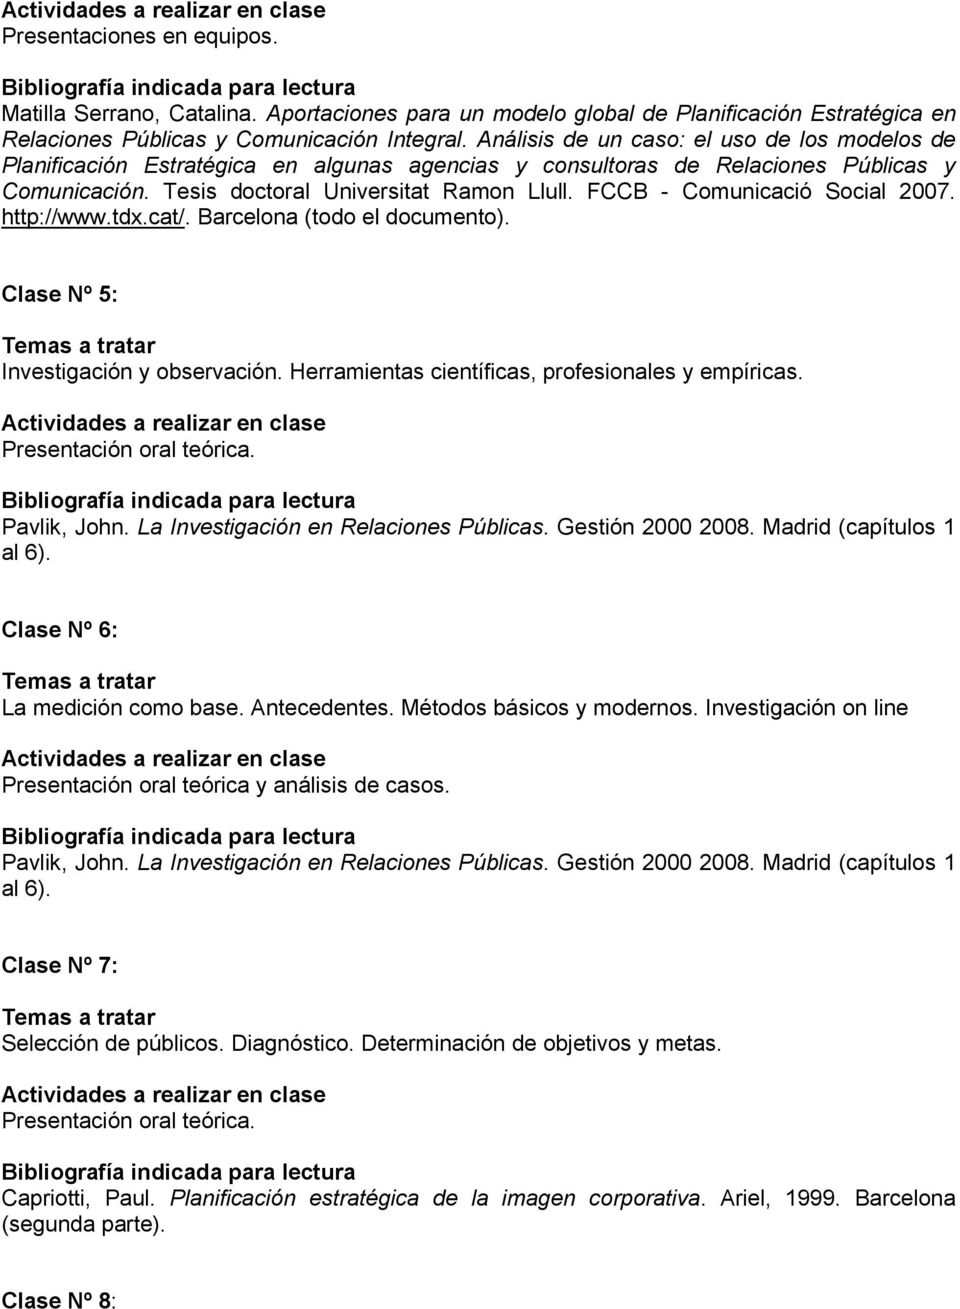 FCCB - Comunicació Social 2007. http://www.tdx.cat/. Barcelona (todo el documento). Clase Nº 5: Investigación y observación. Herramientas científicas, profesionales y empíricas. Pavlik, John.